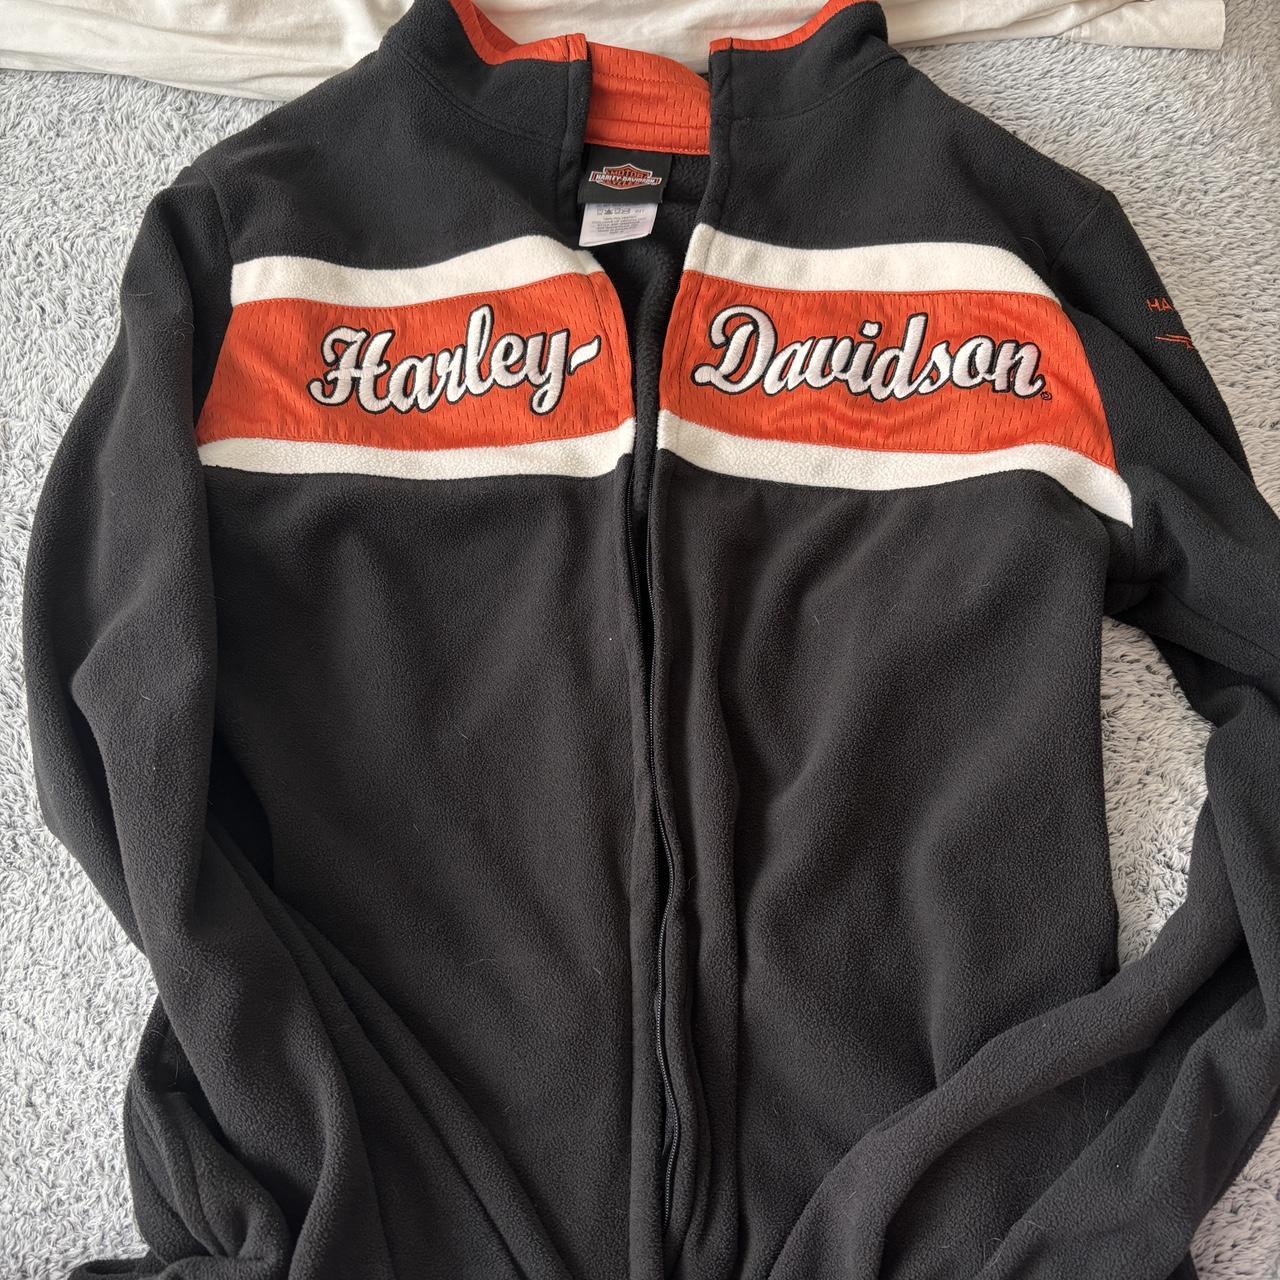 Harley Davidson fleece zip up Size medium No flaws... - Depop